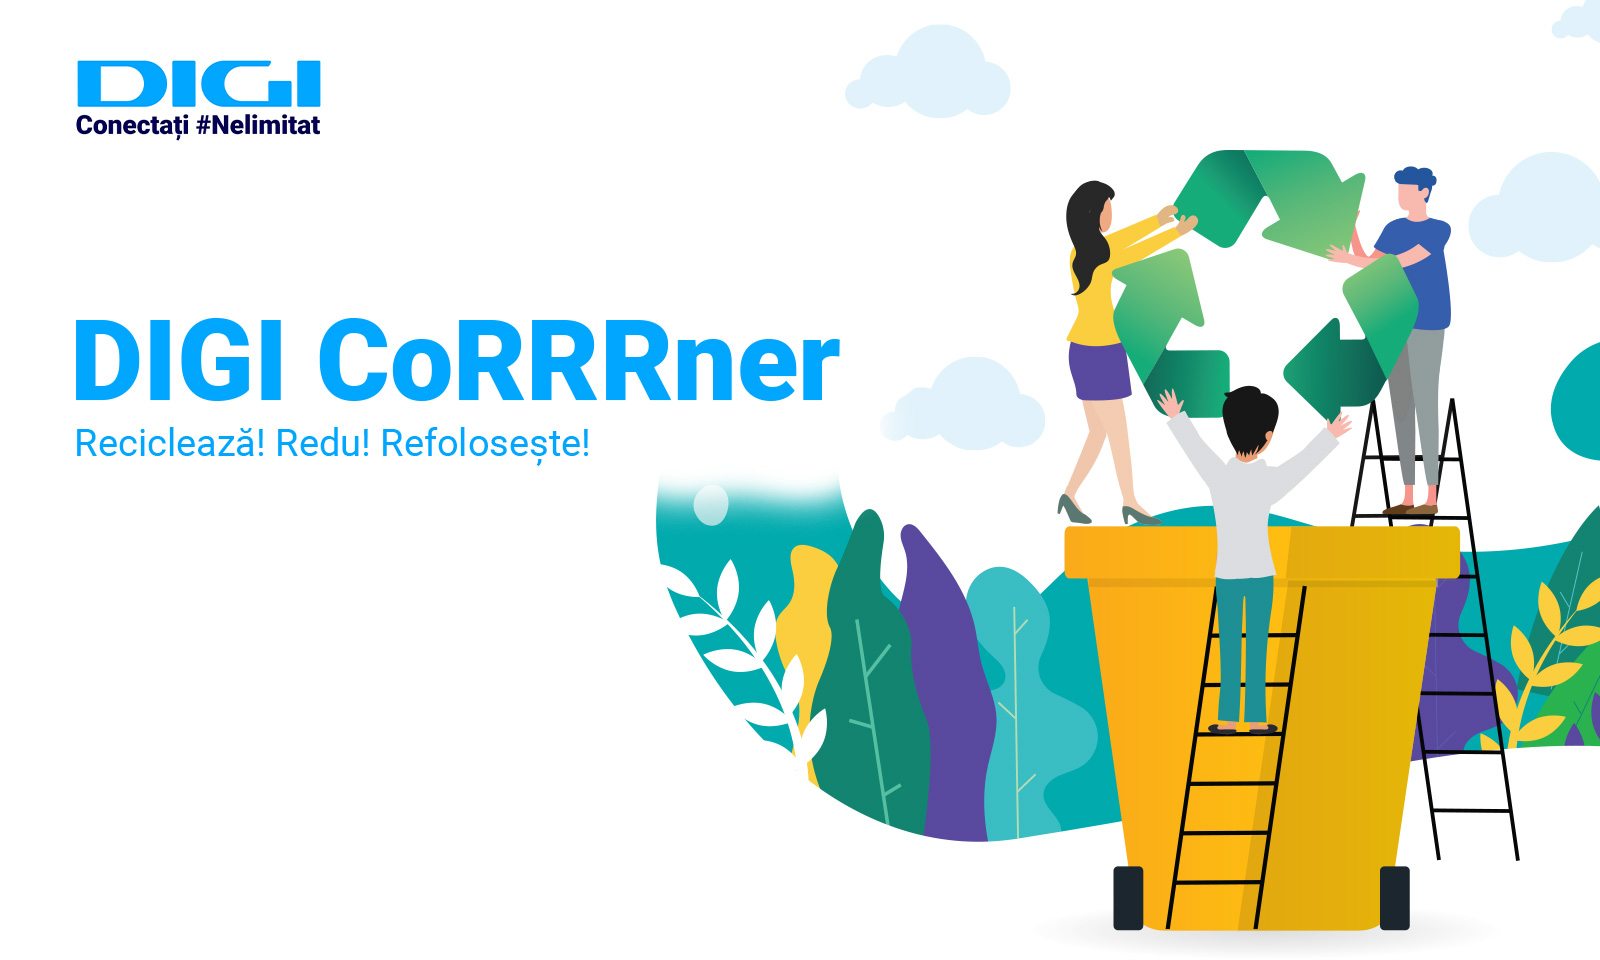 Digi CoRRRner: noul spațiu pentru colectarea deșeurilor